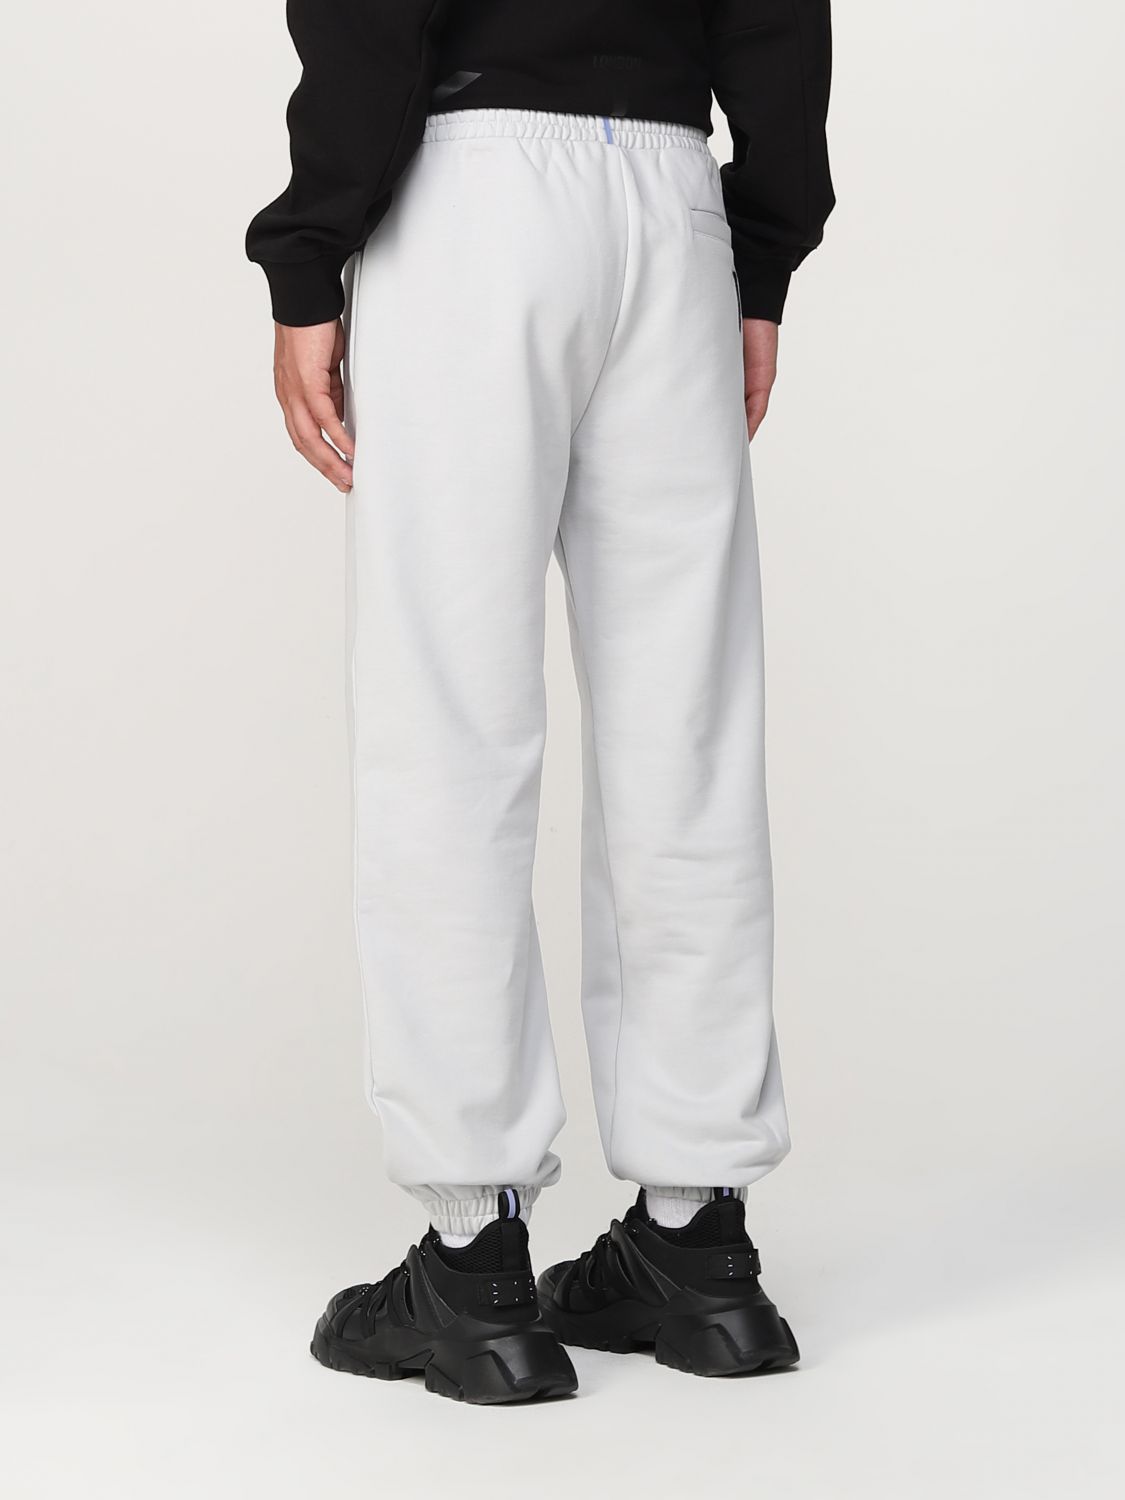 Pantalon Mcq: Pantalon Mcq homme gris 3